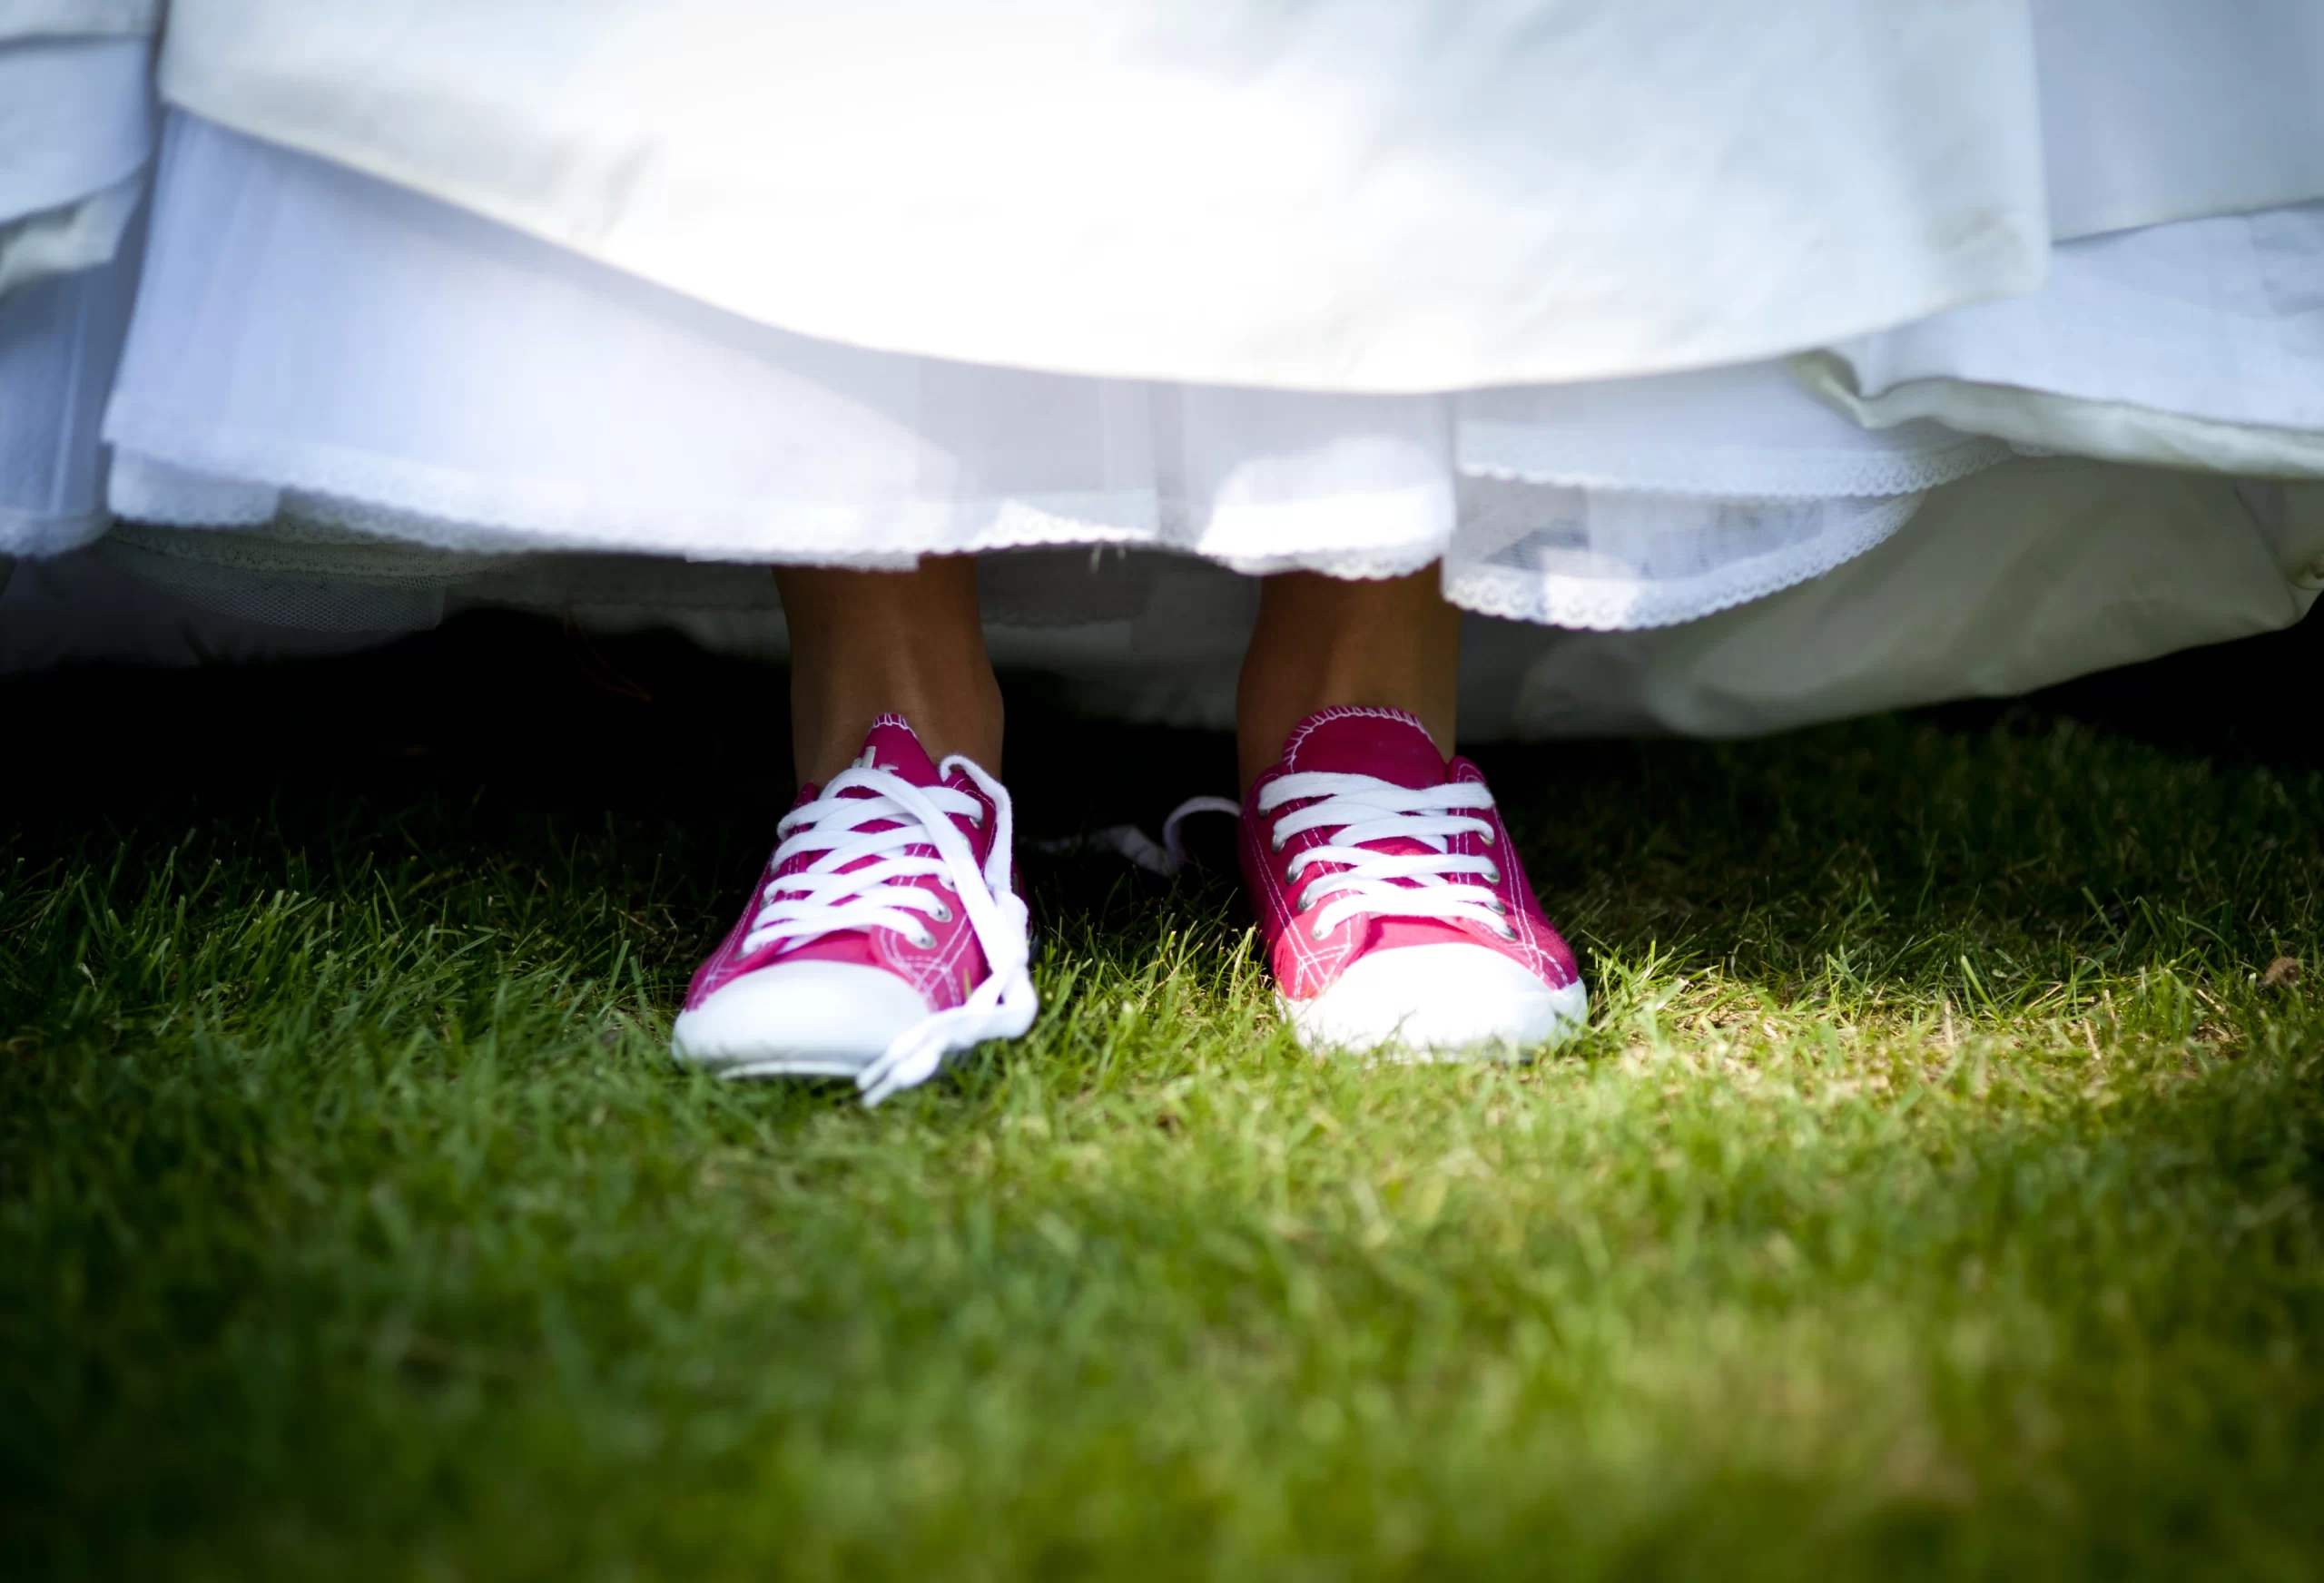 Mulher usando tênis na cor rosa e um vestido de noiva branco em cima da grama. A foto mostra um pouco da grama, os sapatos e a barra do vestido da mulher.